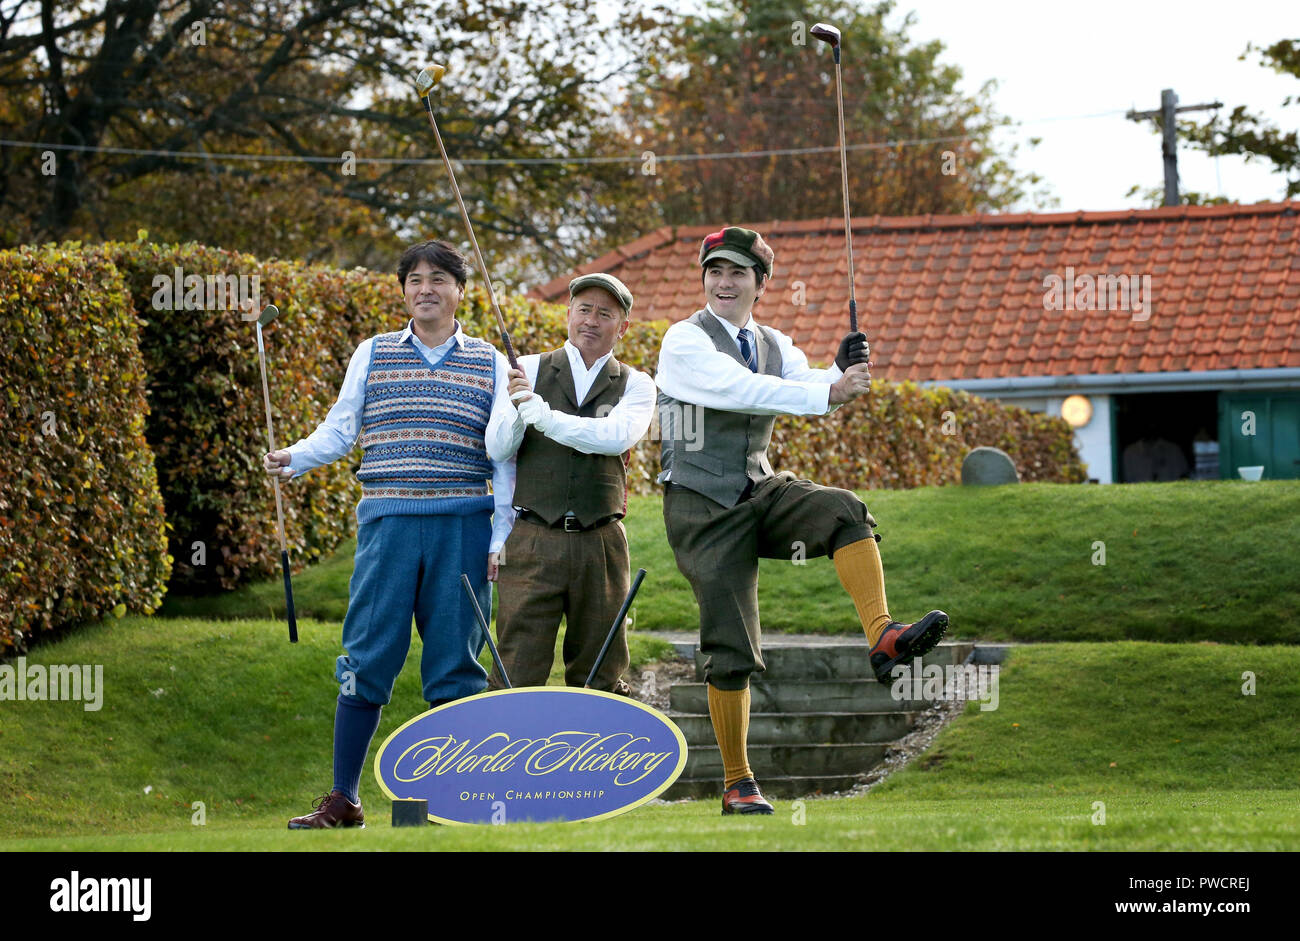 Gli amanti del golf dal Giappone prendendo parte al mondo Hickory campionati aperti a Longniddry Golf Club in Scozia Golf Costa, East Lothian. Foto Stock